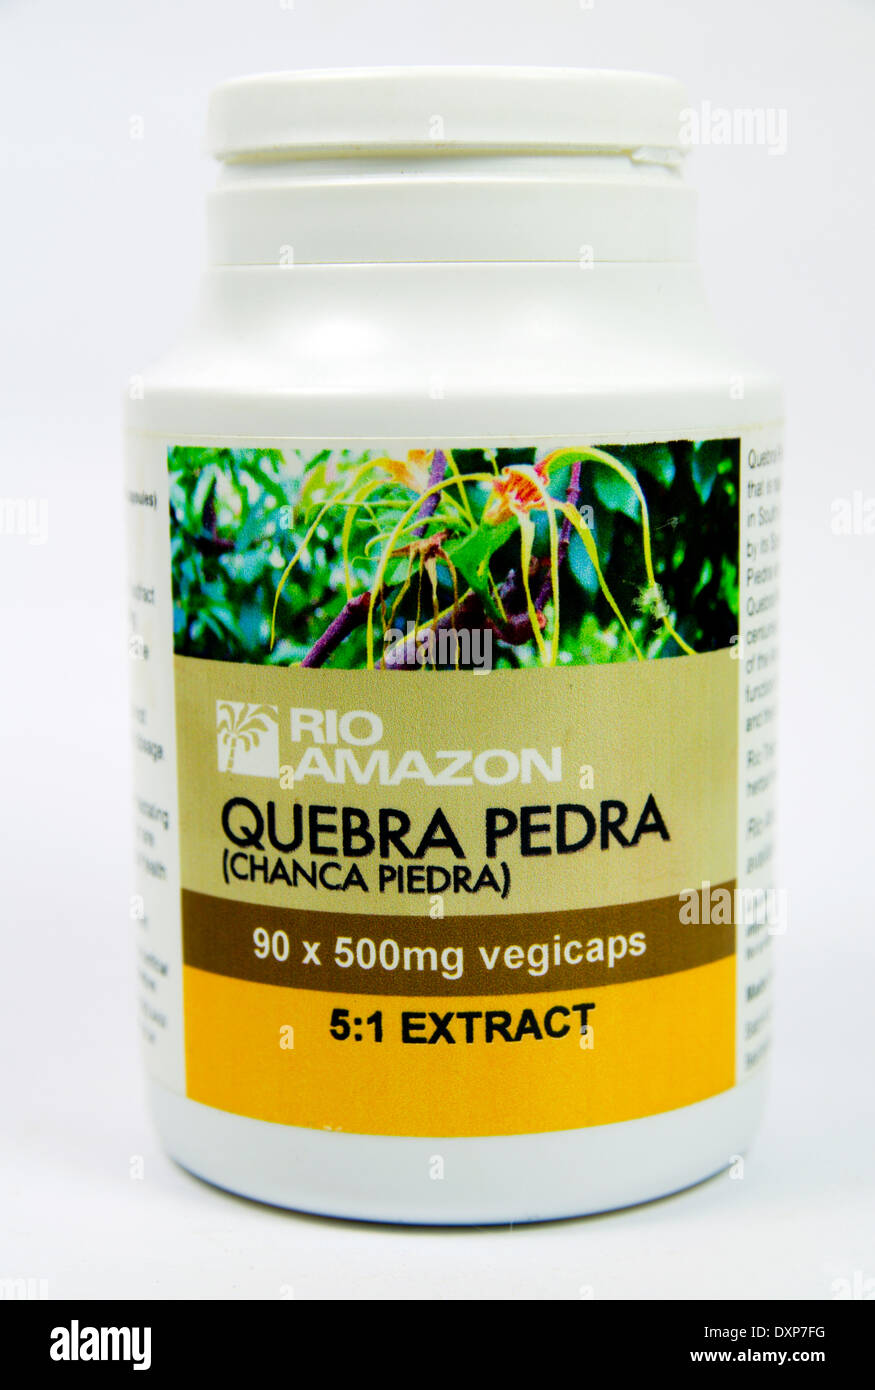 Quebra Pedra pflanzliches Heilmittel aus dem Amazonas zur Behandlung von Nierensteinen und Gallenblase Probleme. Stockfoto